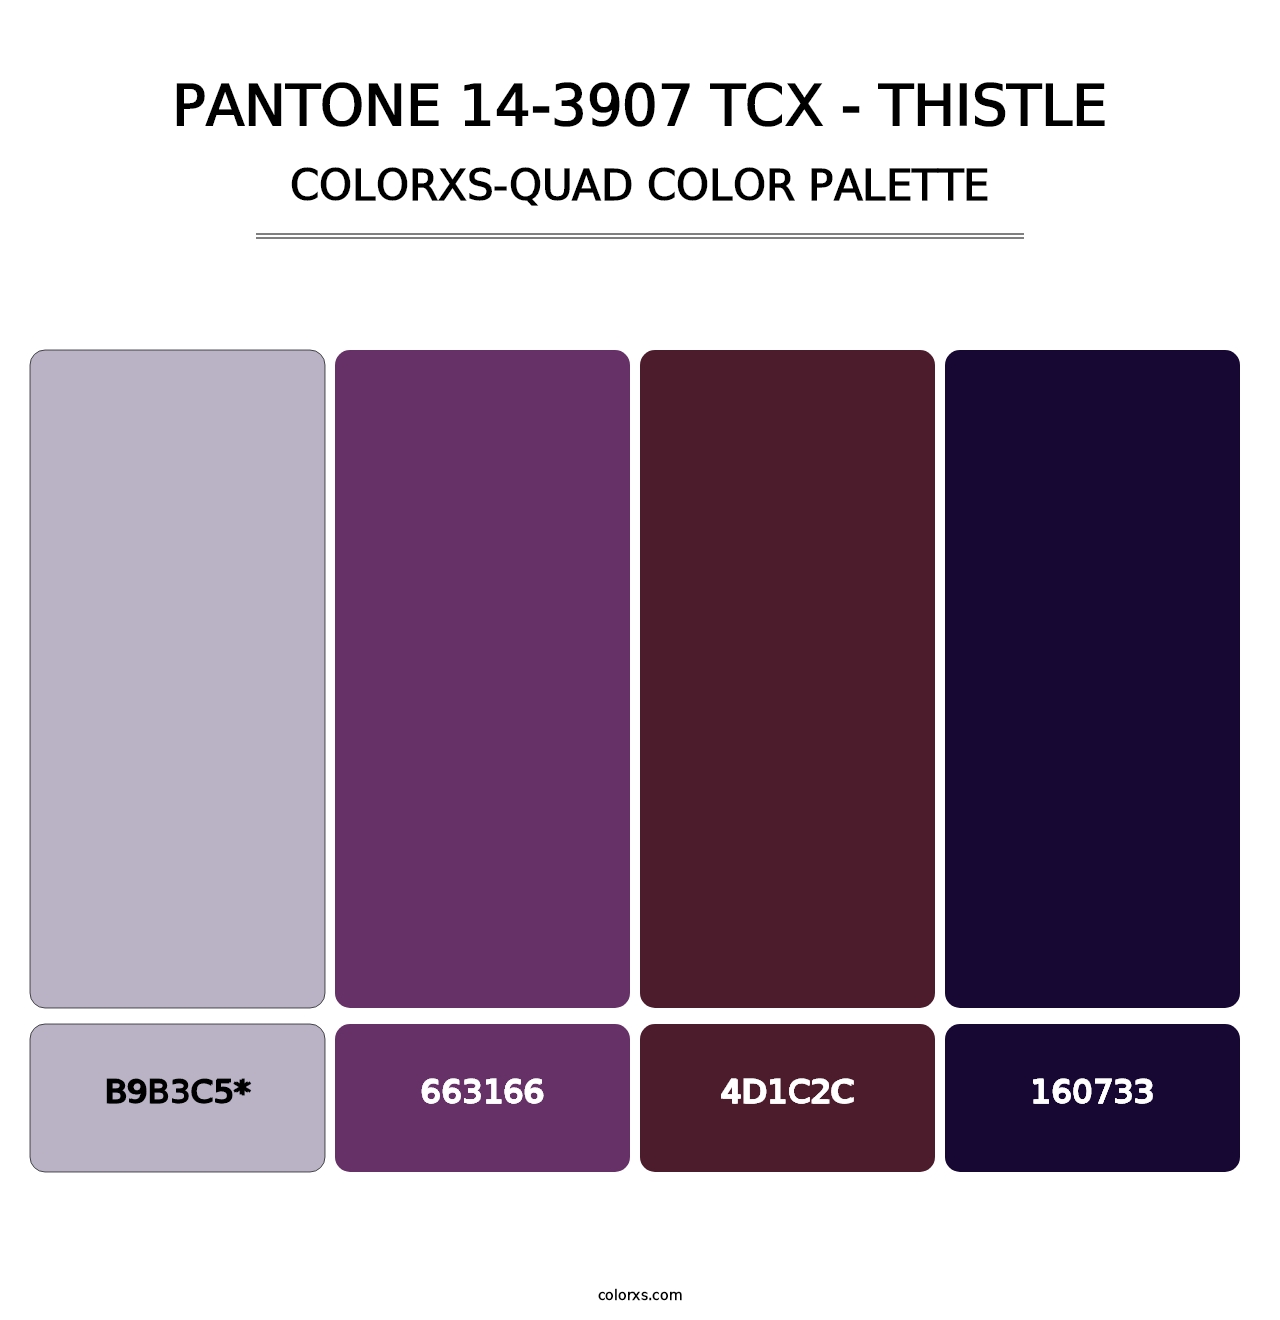 PANTONE 14-3907 TCX - Thistle - Colorxs Quad Palette